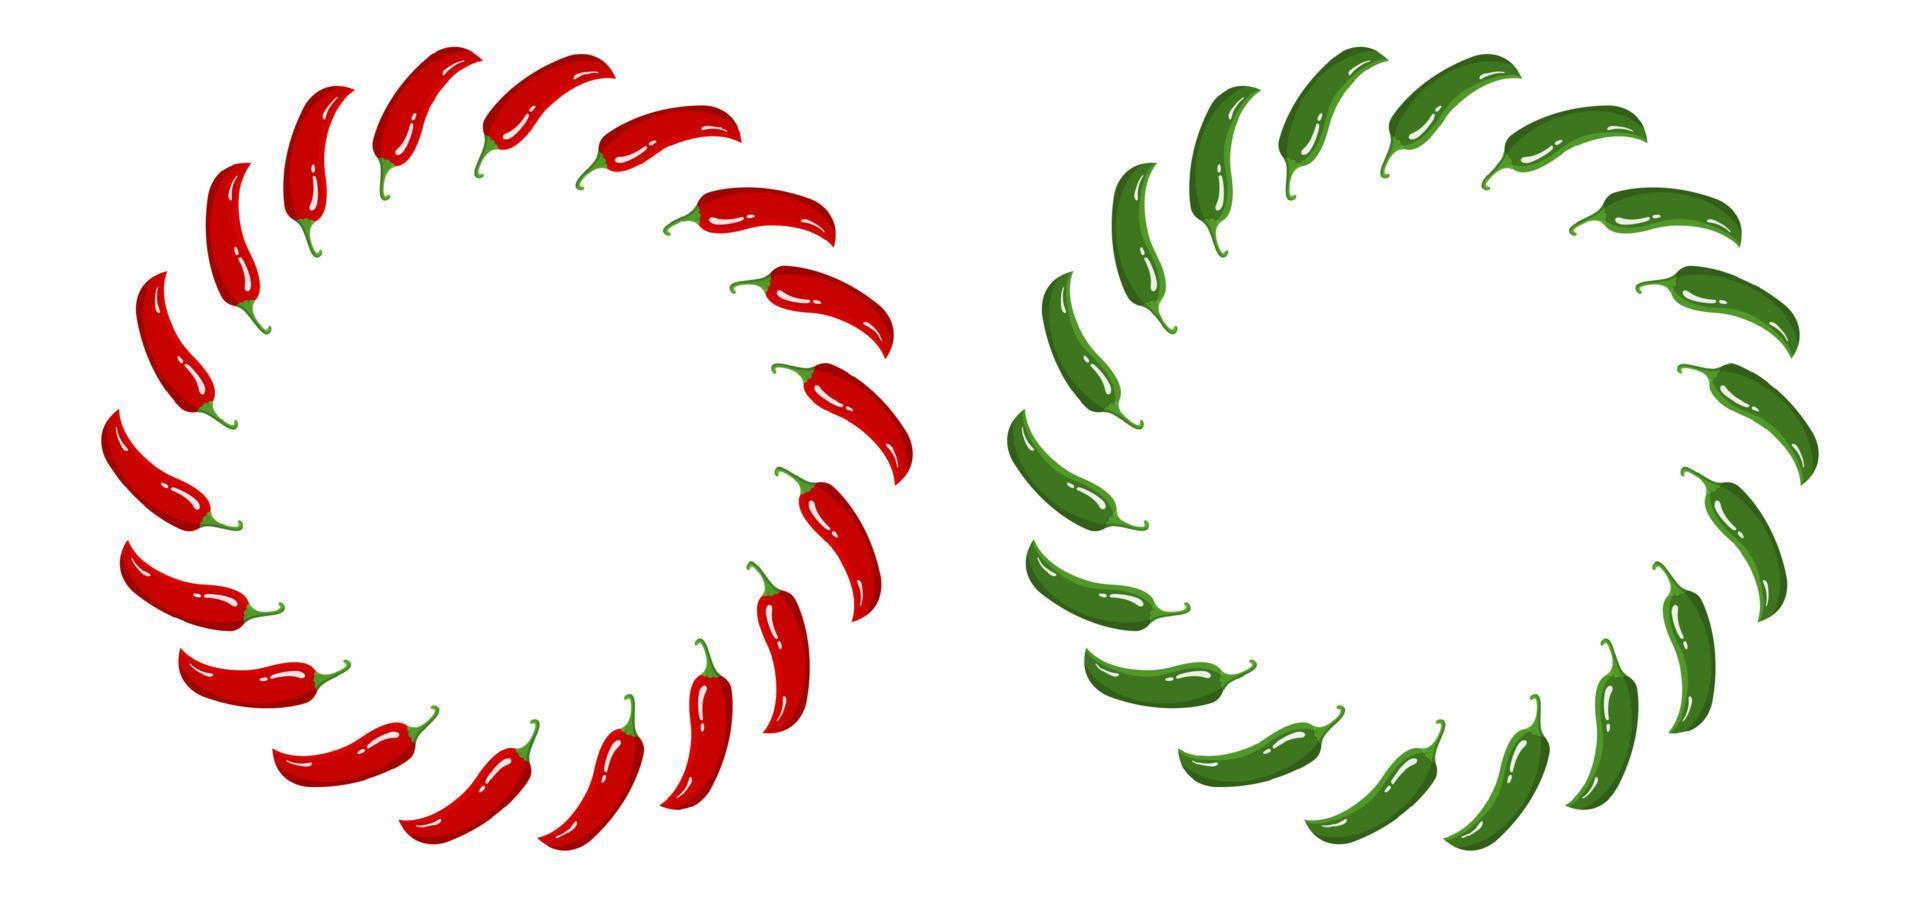 rode en groene chili peper krans. verse groenten geïsoleerd op een witte achtergrond. cirkelframe van peper voor markt, receptontwerp. cartoon vlakke stijl. vectorillustratie voor uw ontwerp, web. vector